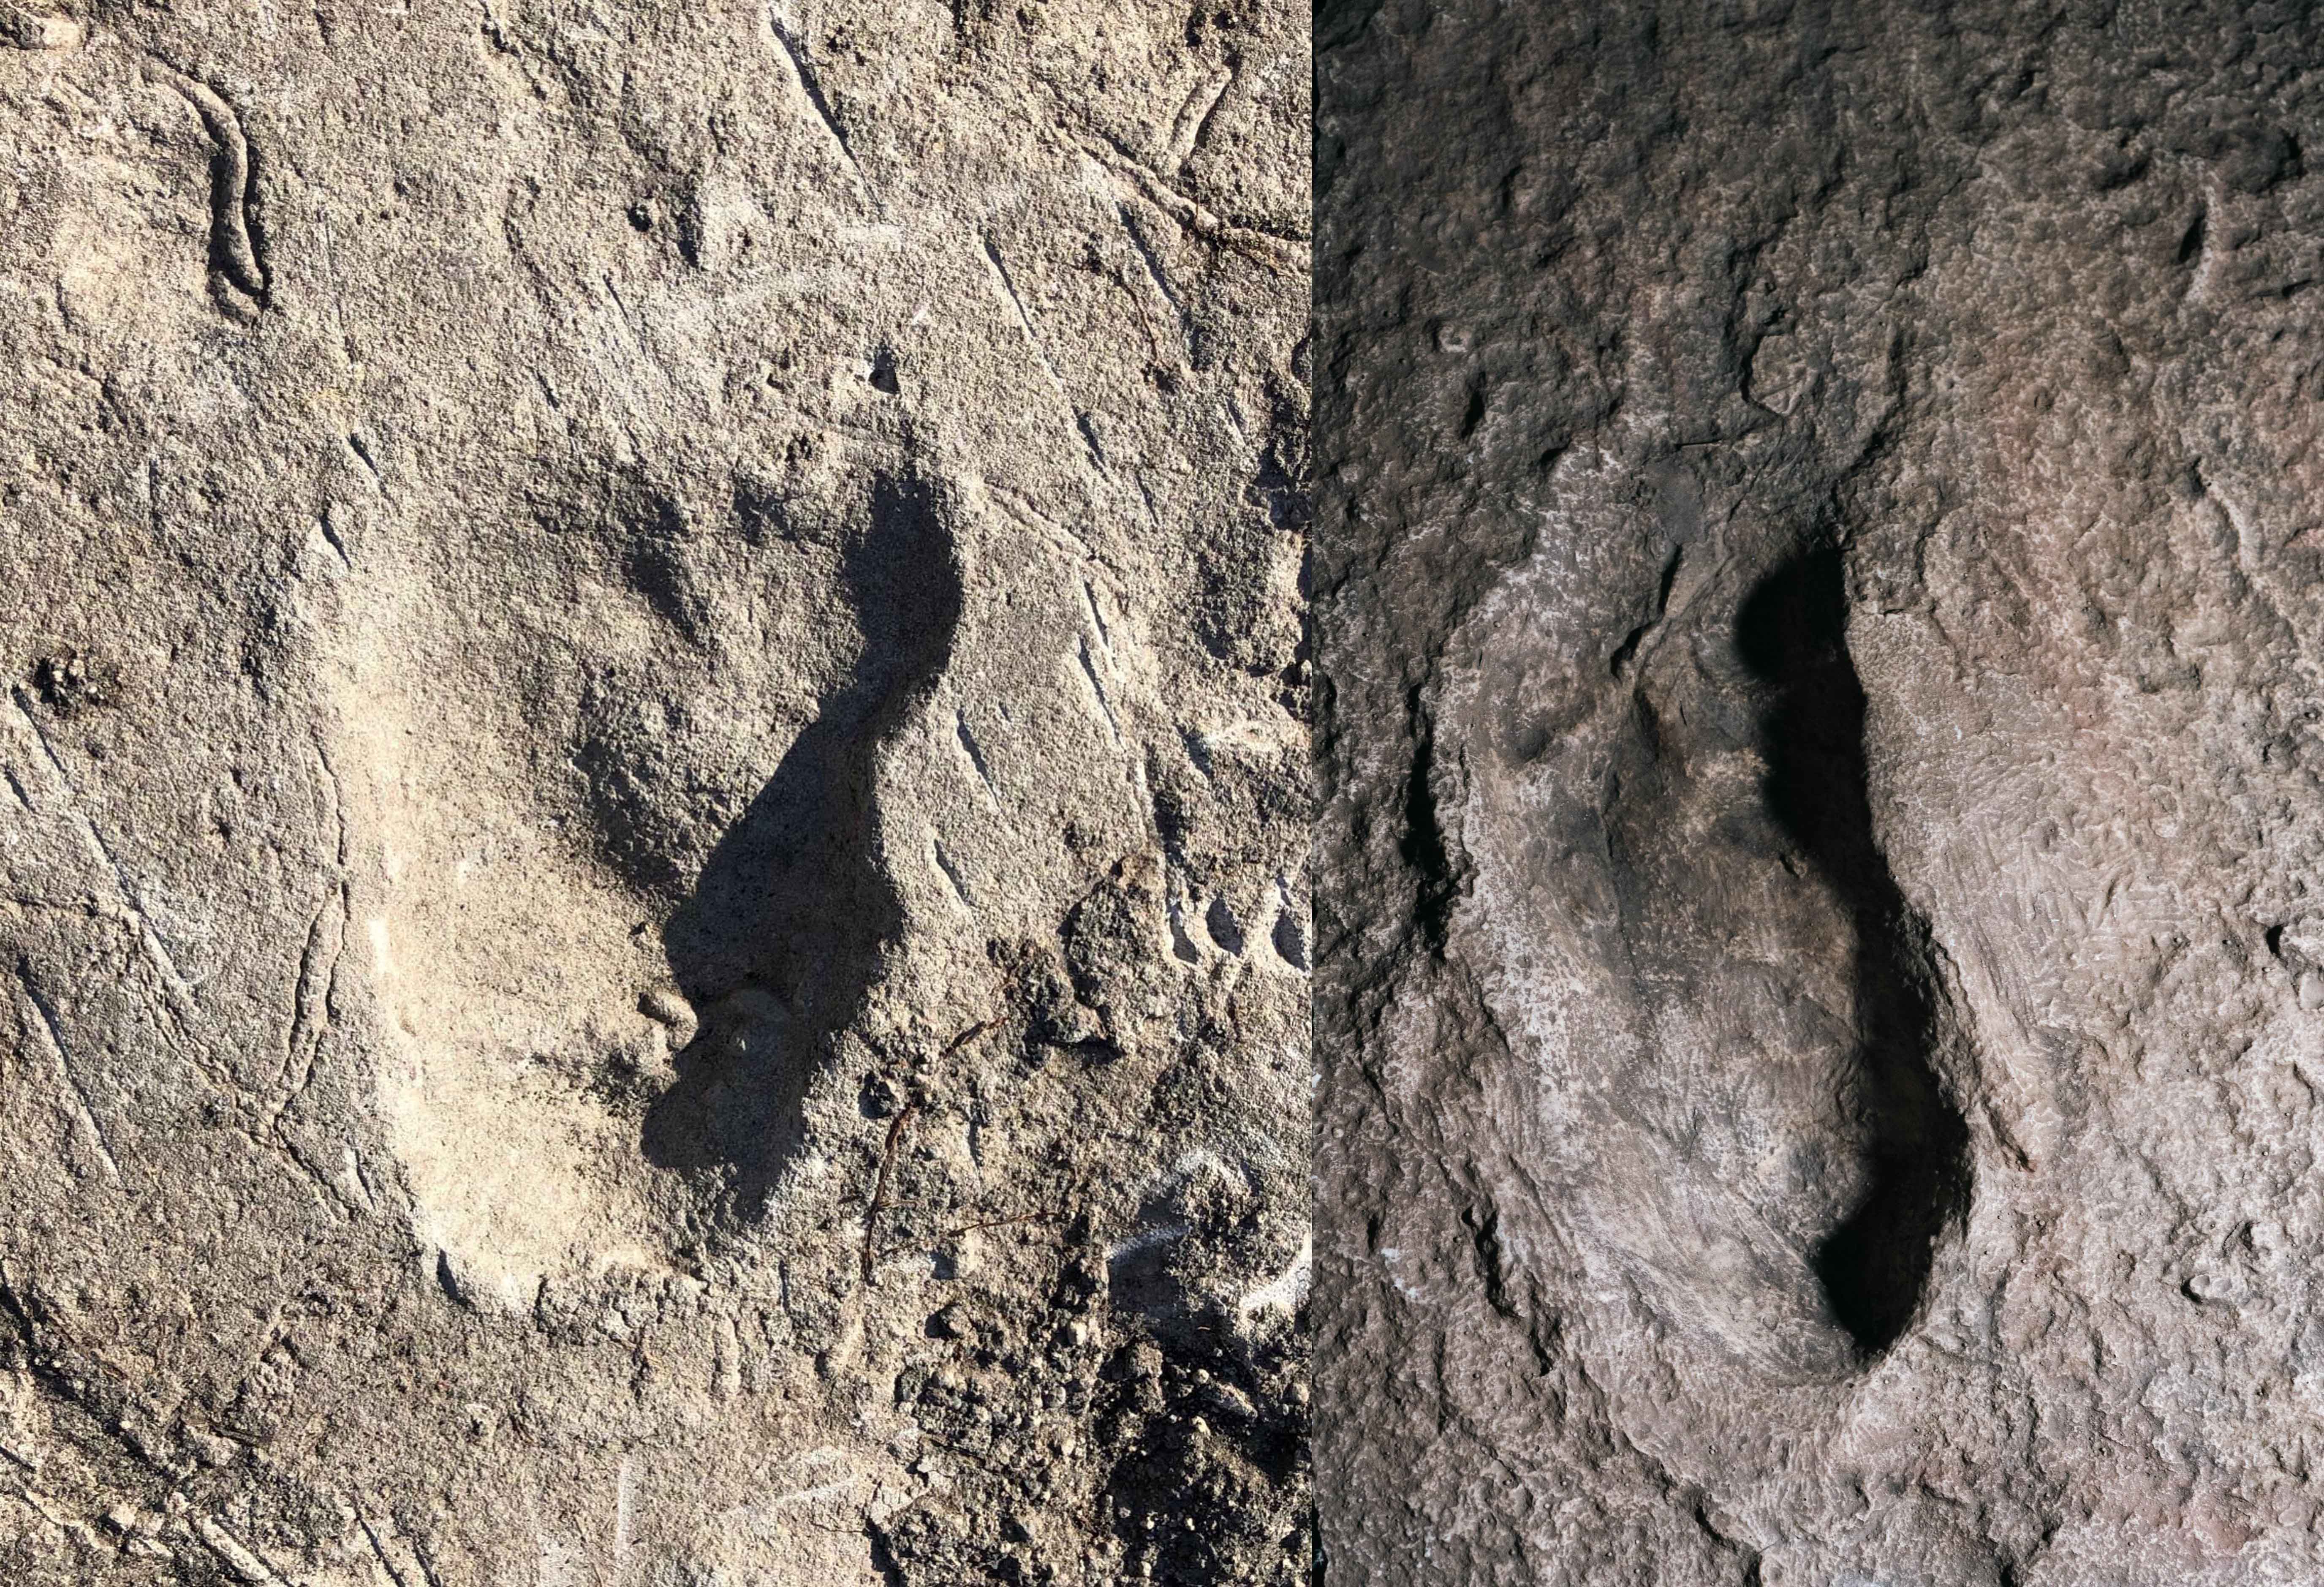 Laetoli footprint images